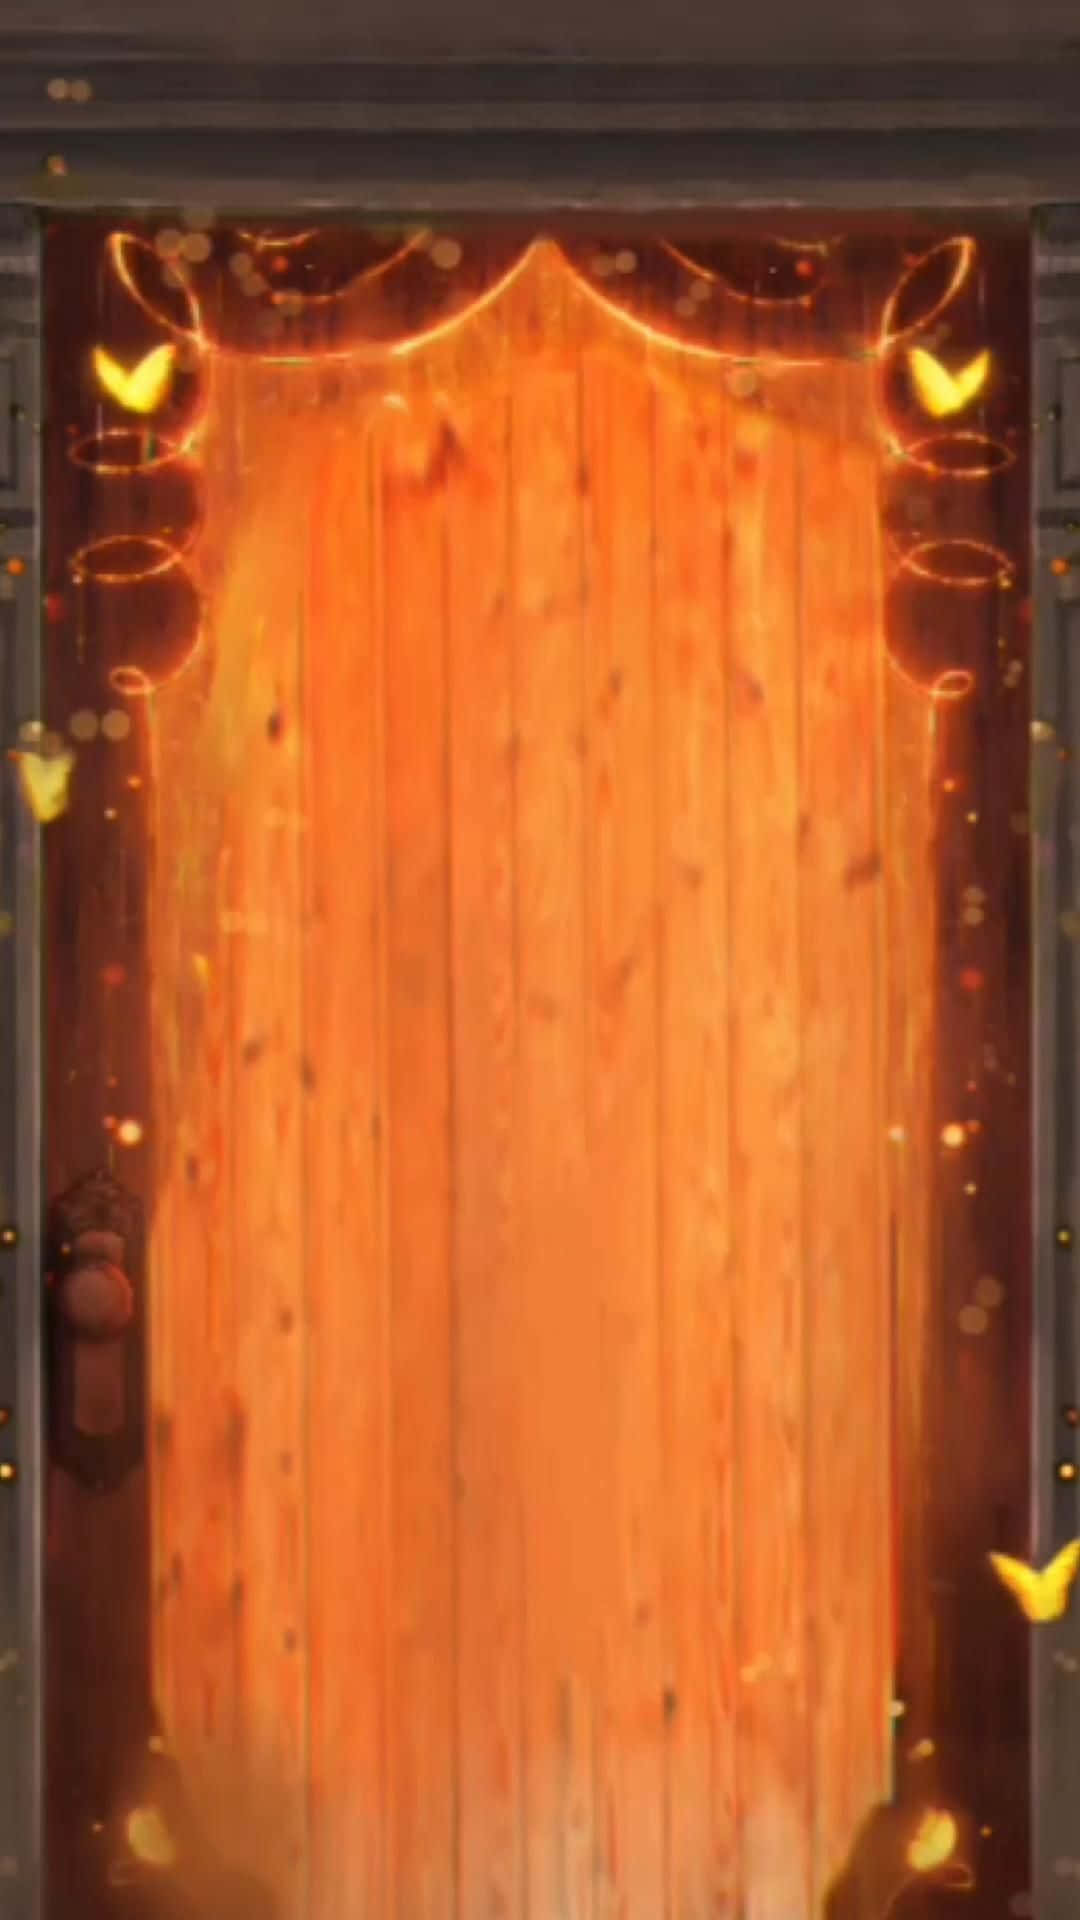 A Door With A Golden Door And A Golden Door